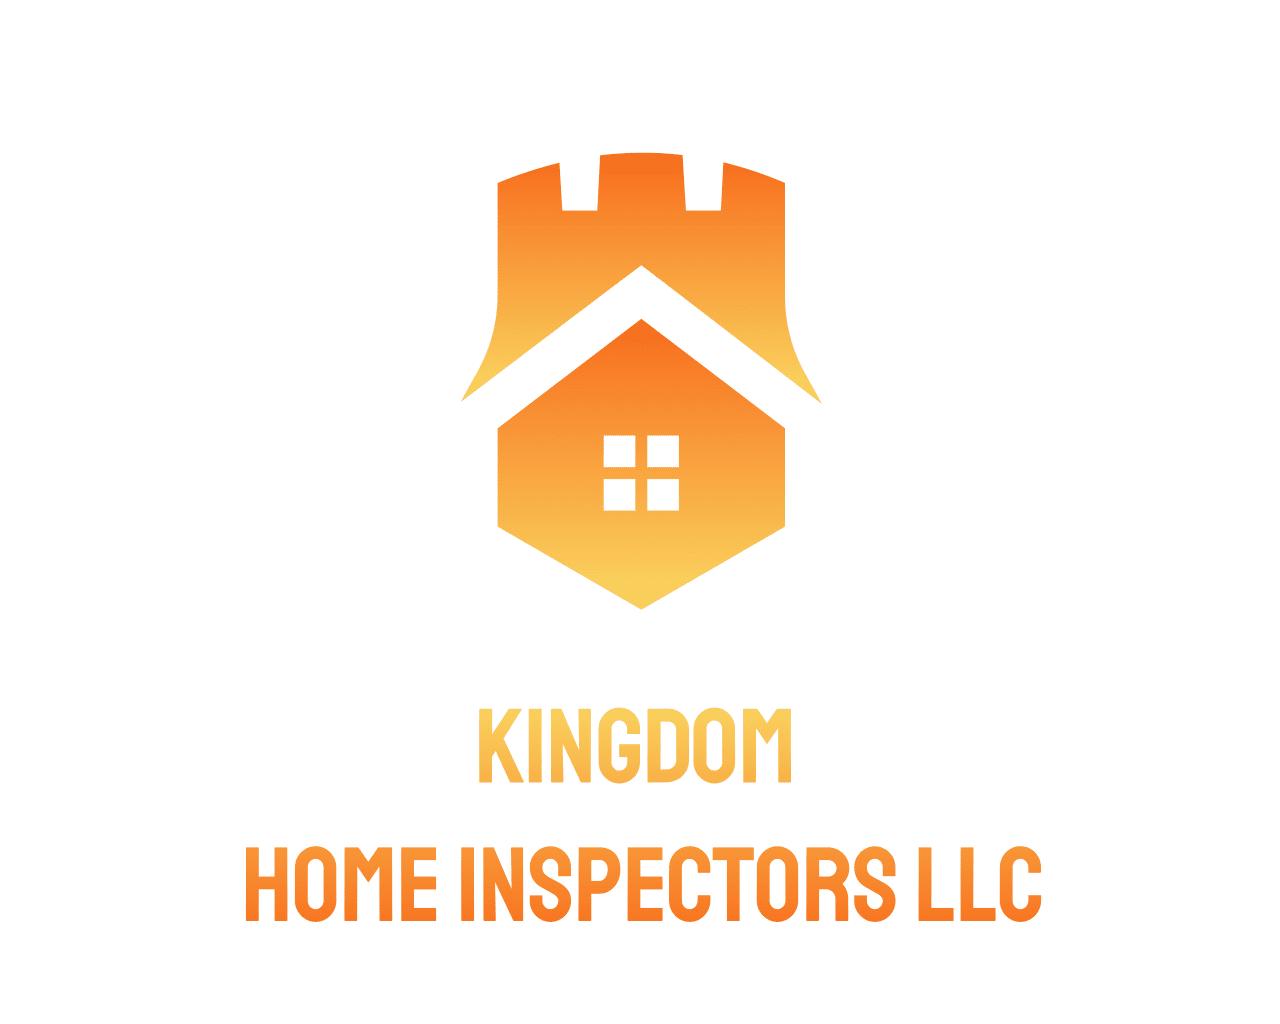 Kingdom Home Inspectors LLC